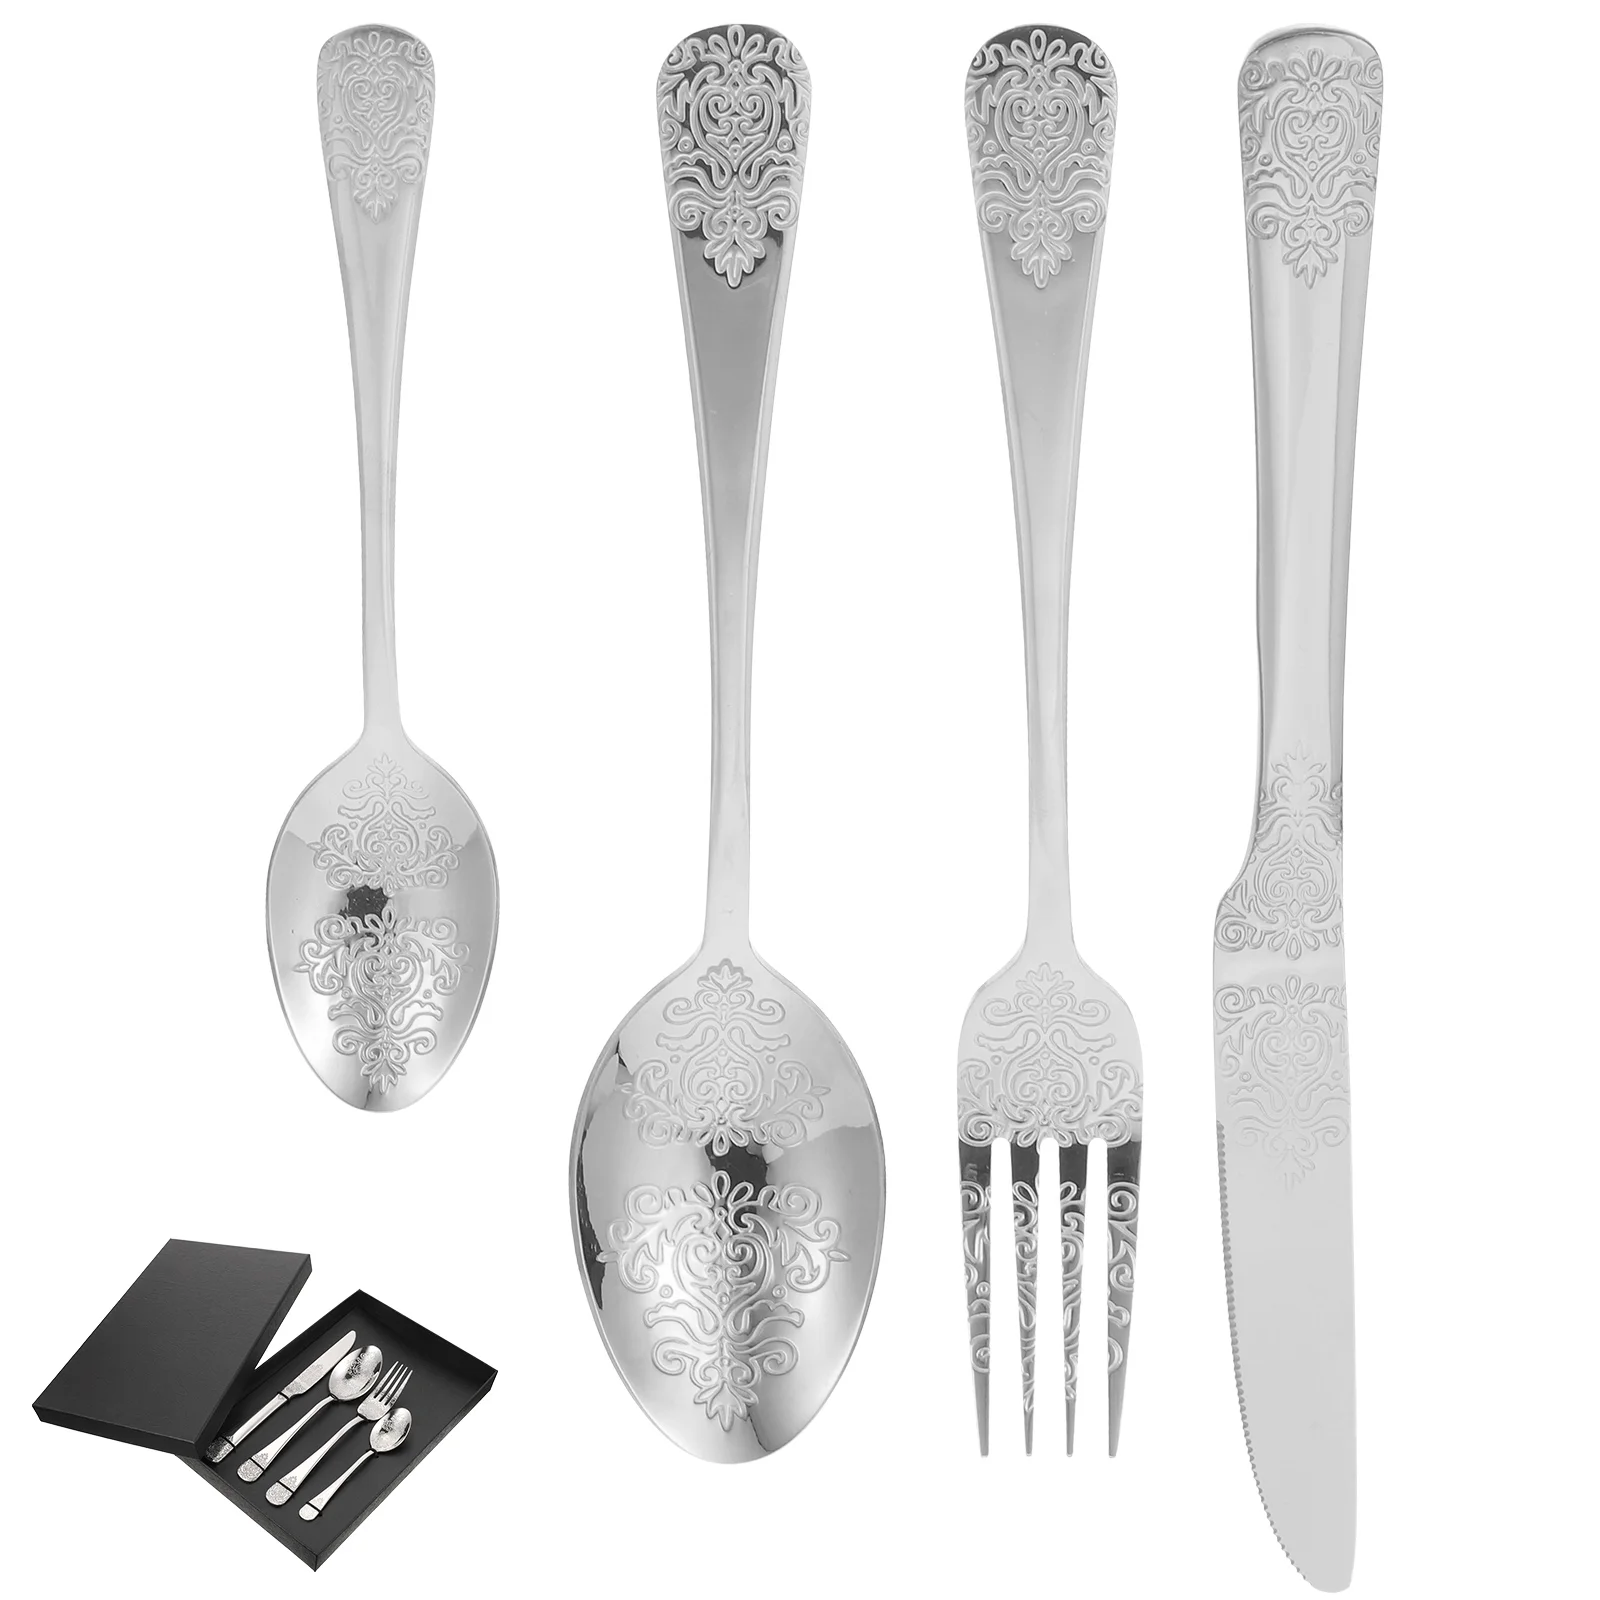 

Set Stainless Steel Utensils Western Cutlery Metal Flatware Silver Serving Spoons Forks Dinnerware Tableware Kitchen Dinner